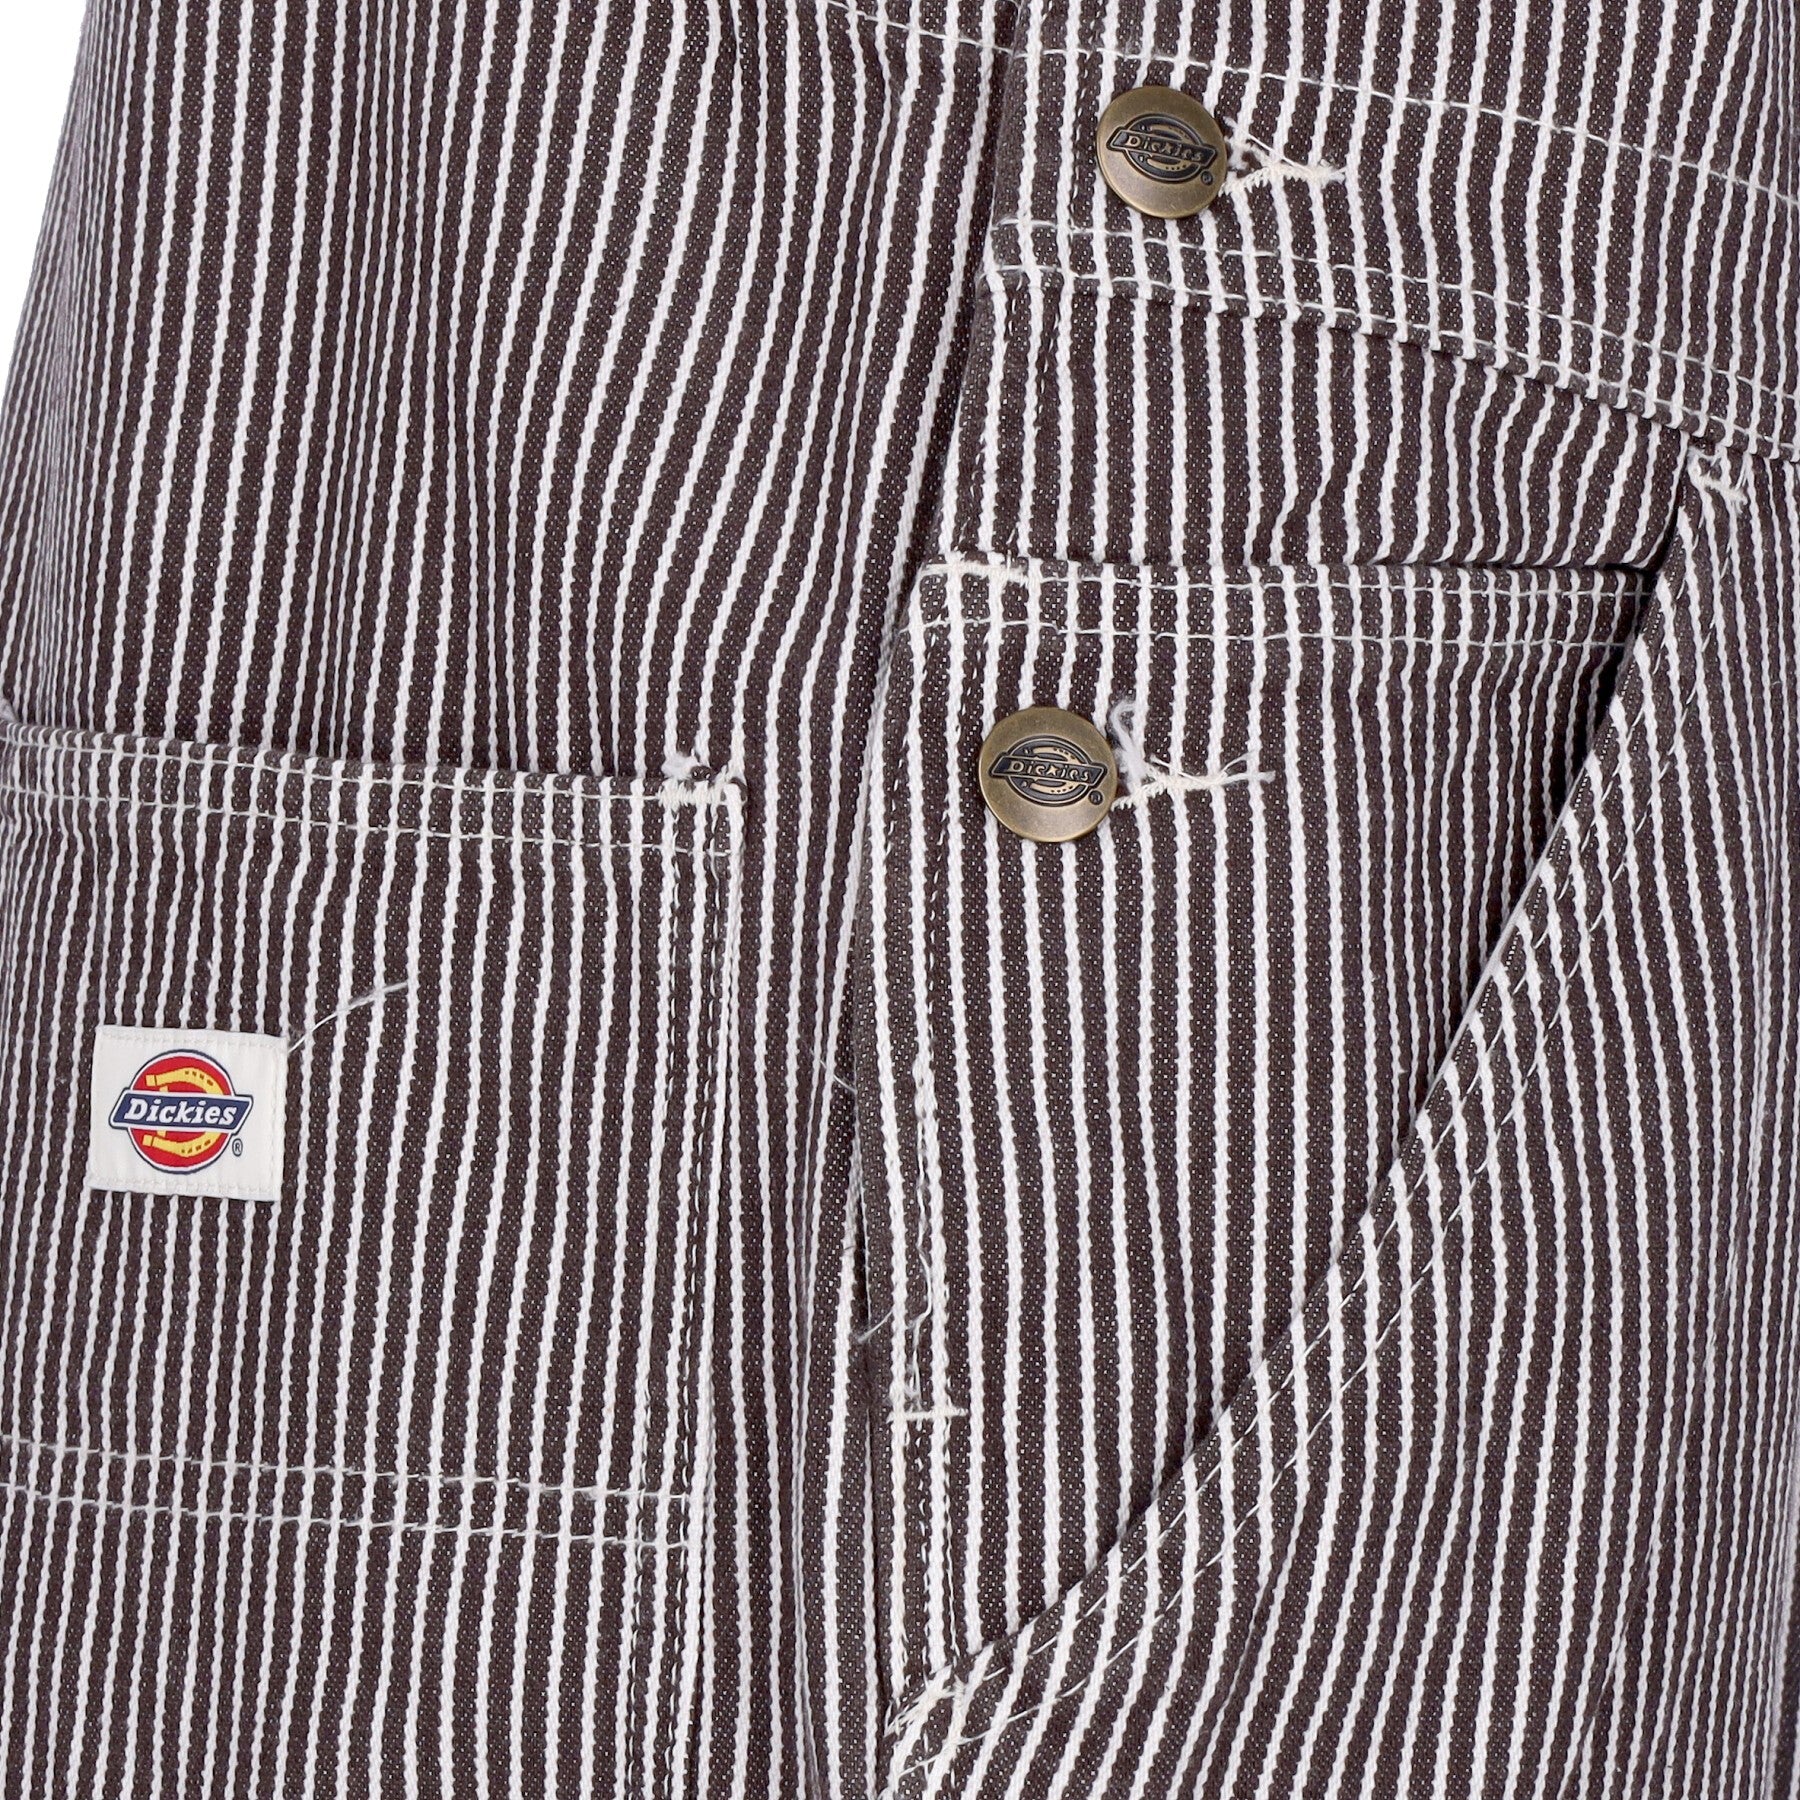 Salopette Uomo Classic Hickory Stripe In Denim Brown Striped